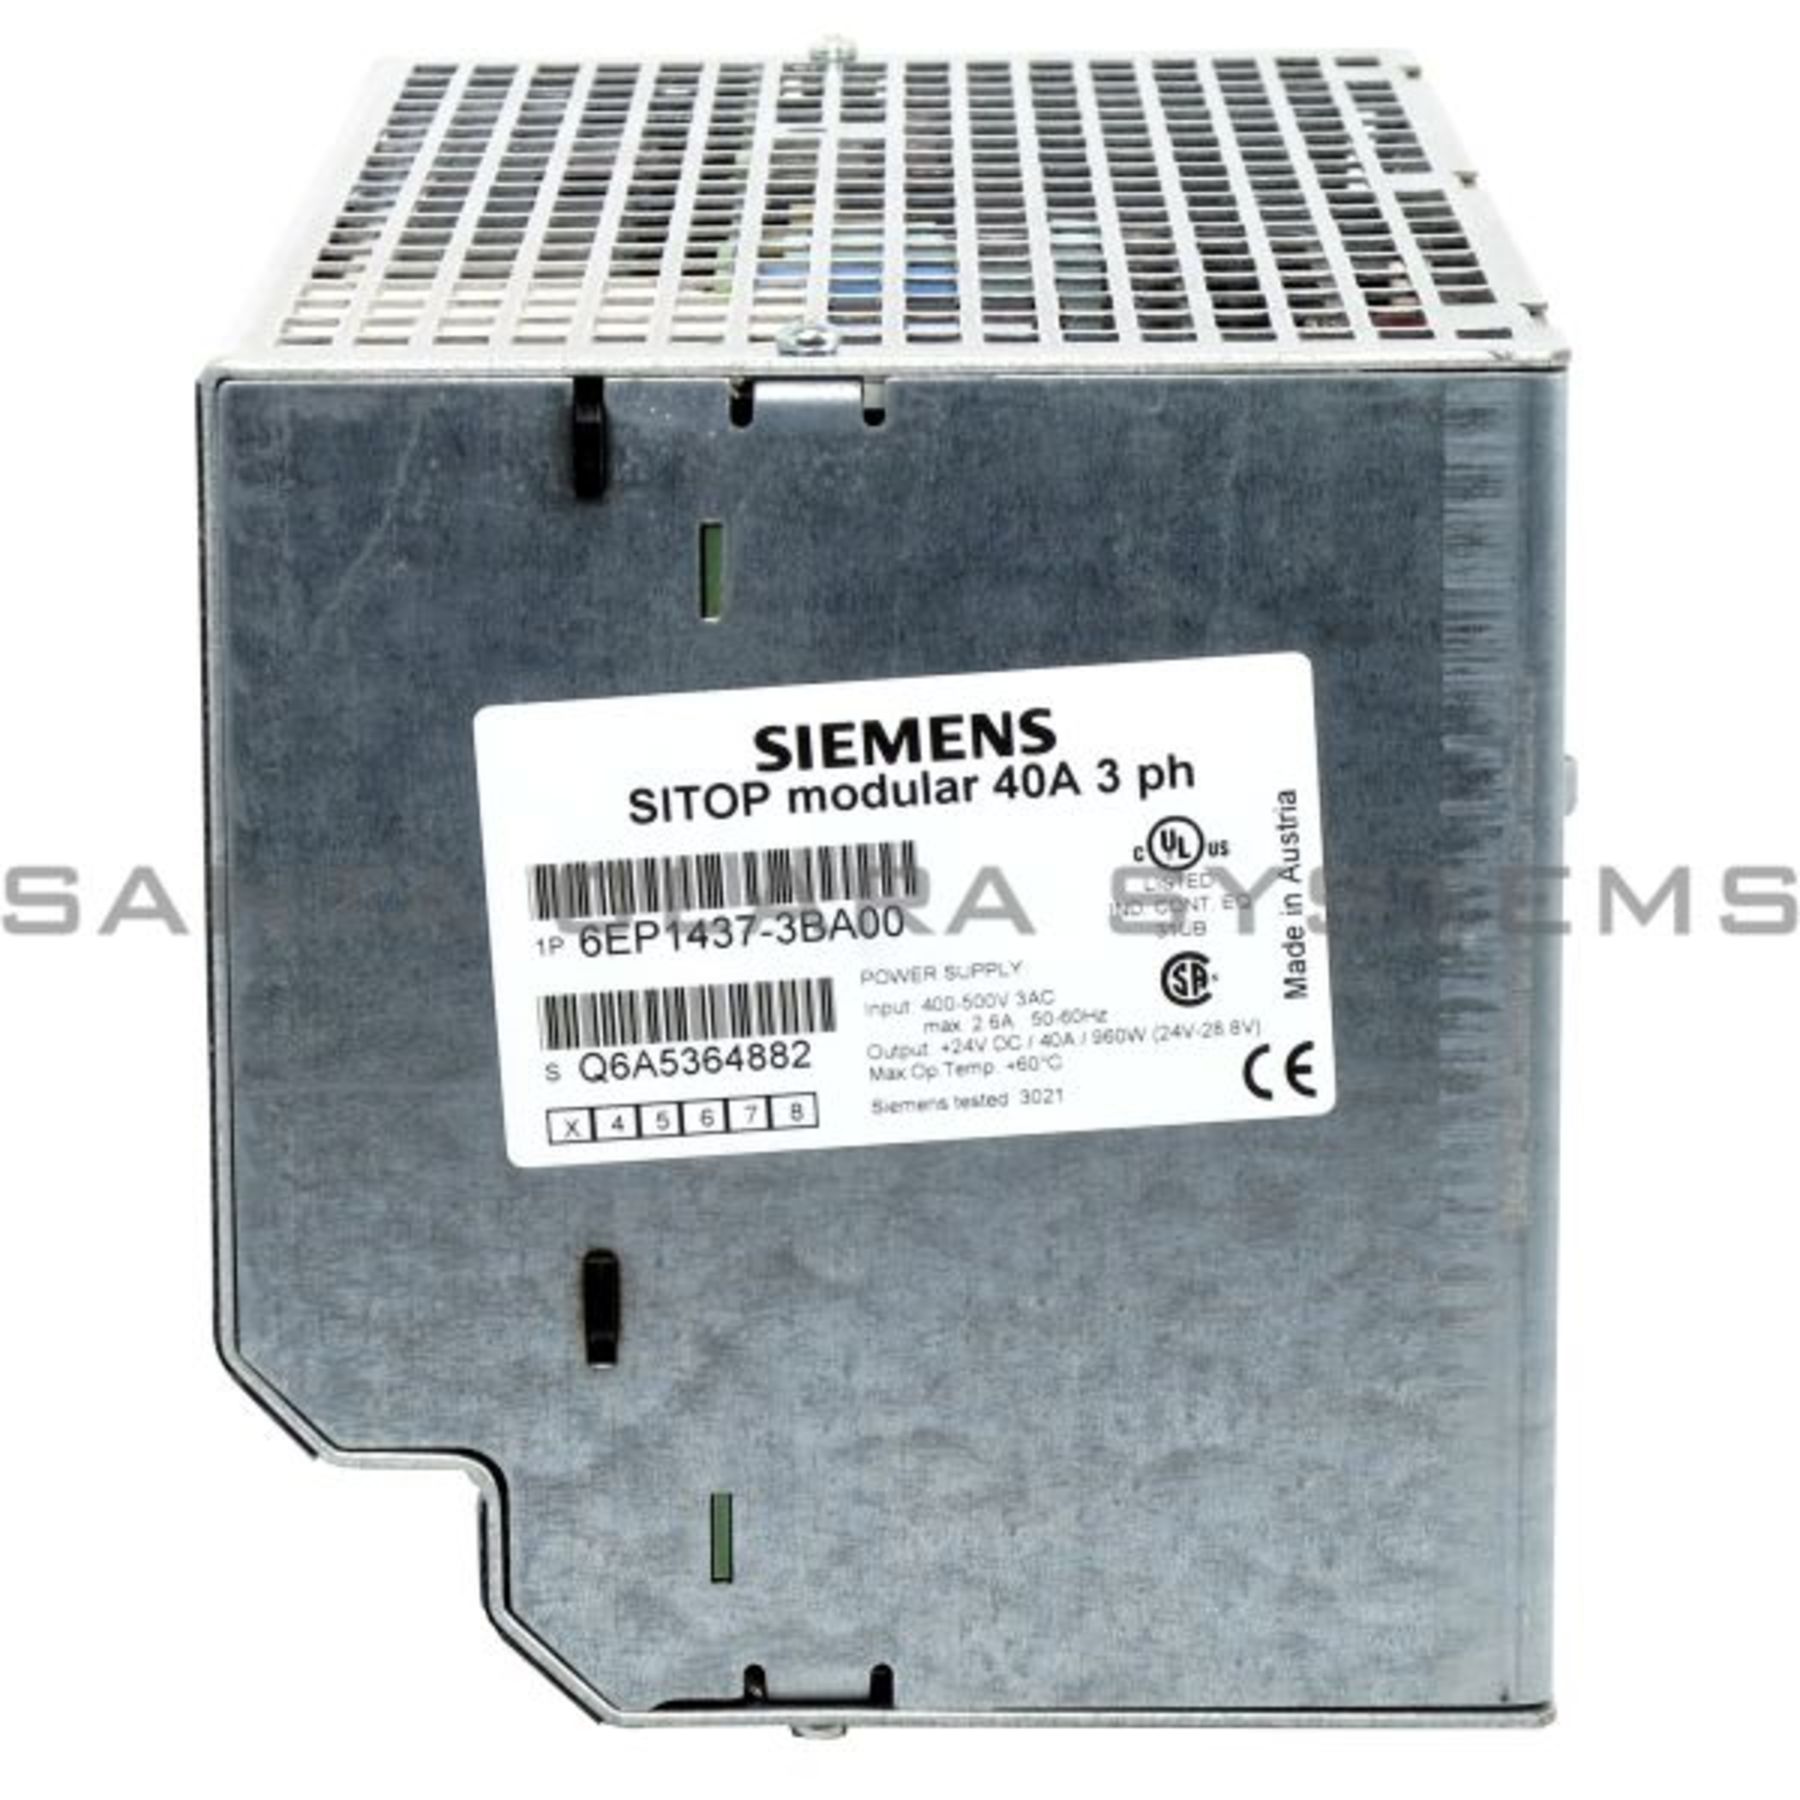 6EP1437-3BA00 Siemens Power Supply | SITOP Modular | 6EP1437-3BA00